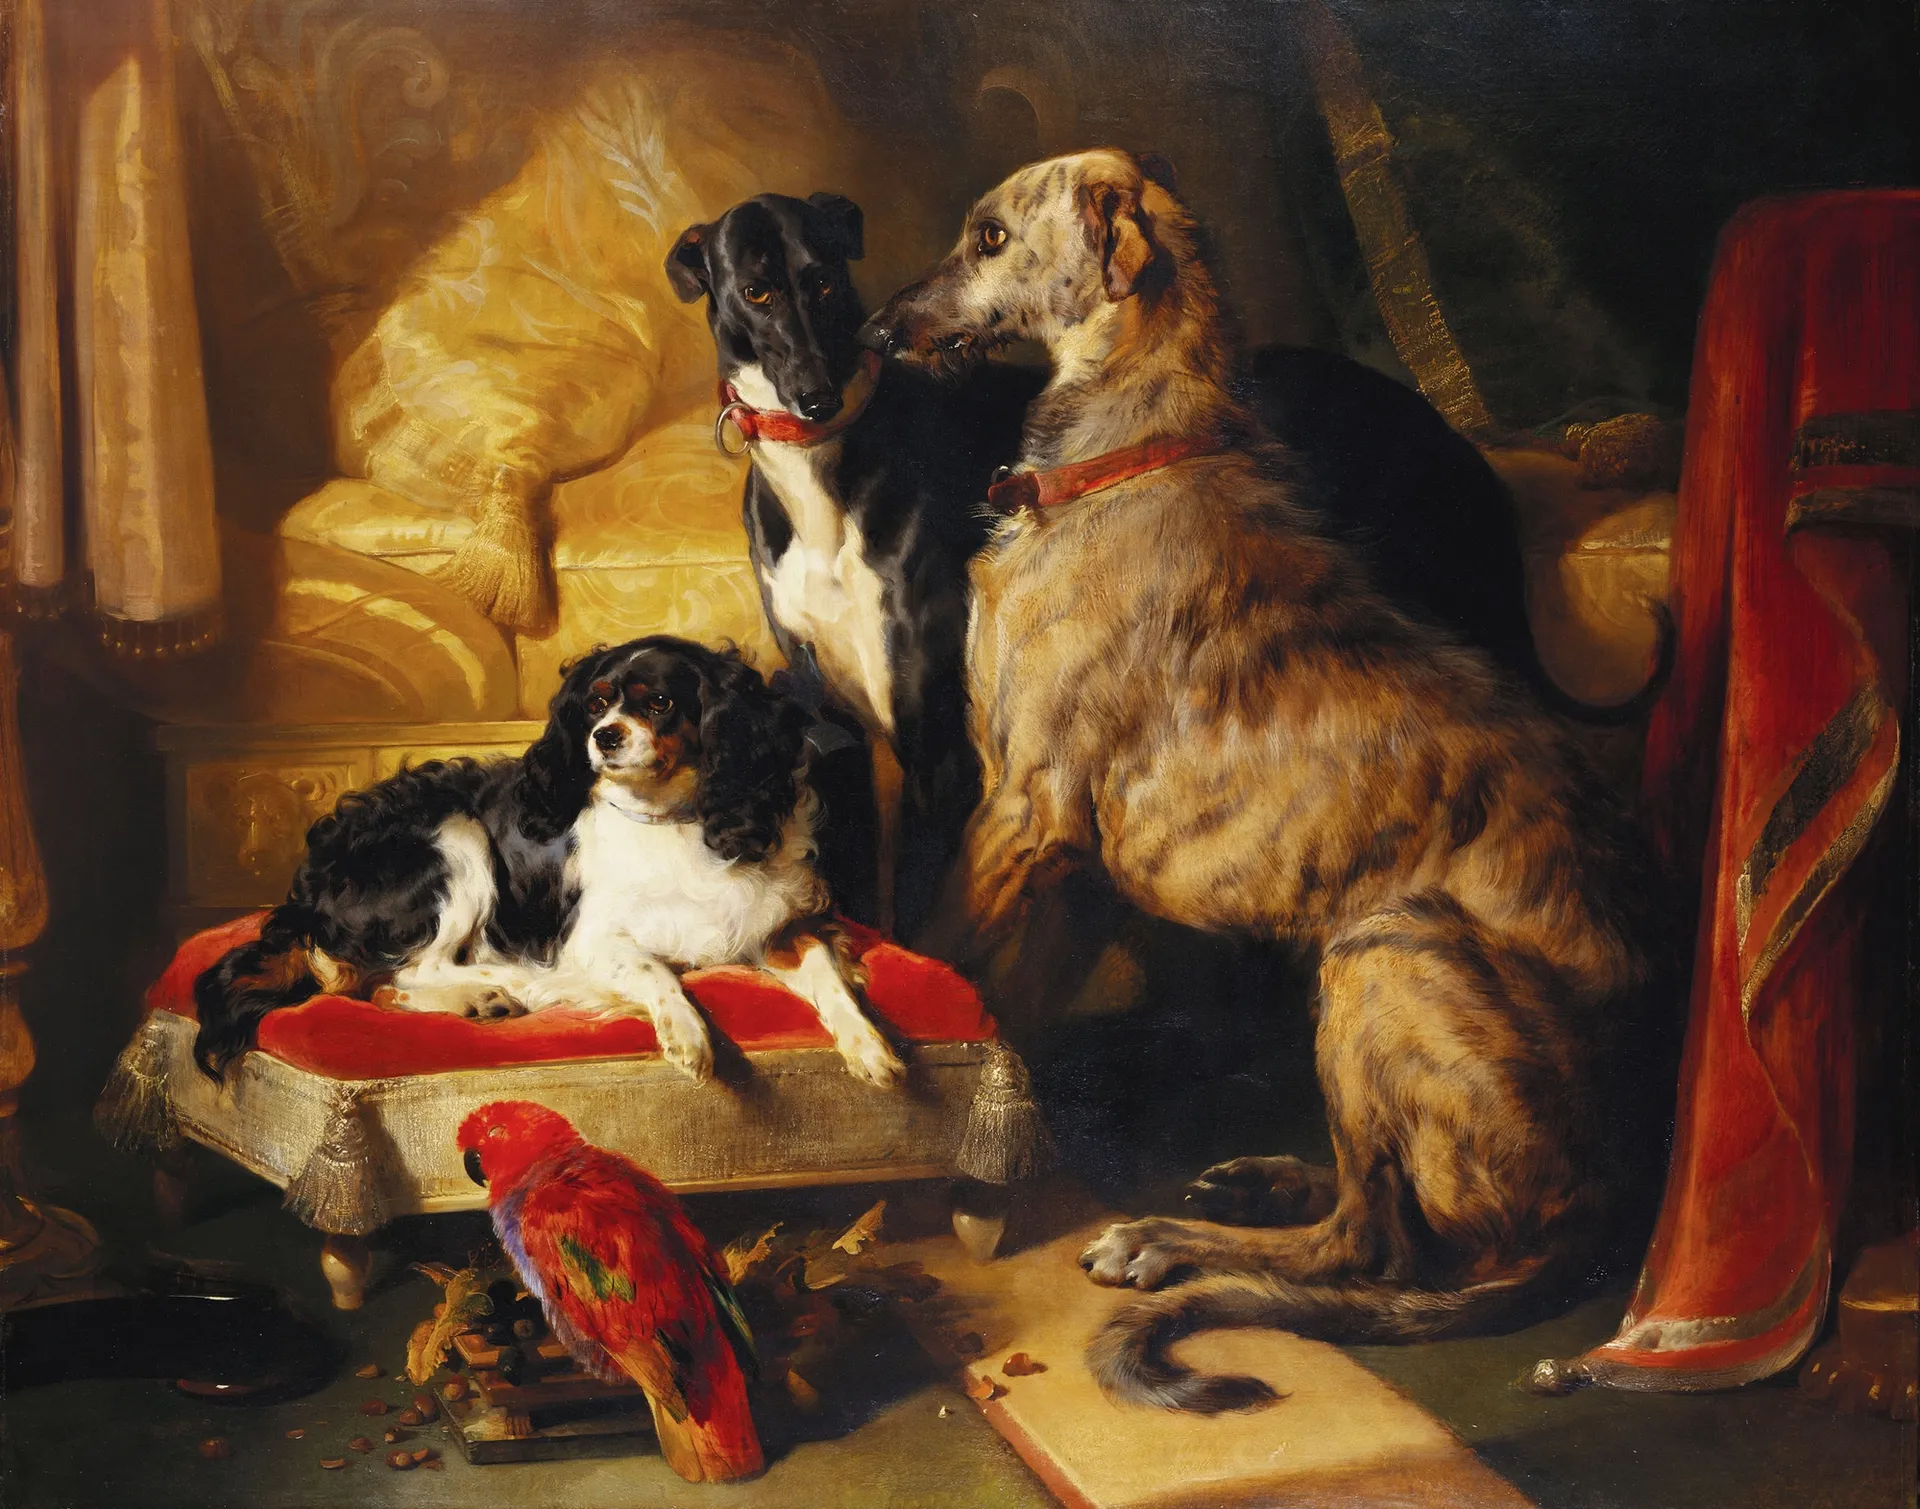 Έντουιν Λάντσιερ «Έκτωρ, Νέρων και Ντας με τον παπαγάλο Λότι» (1838)